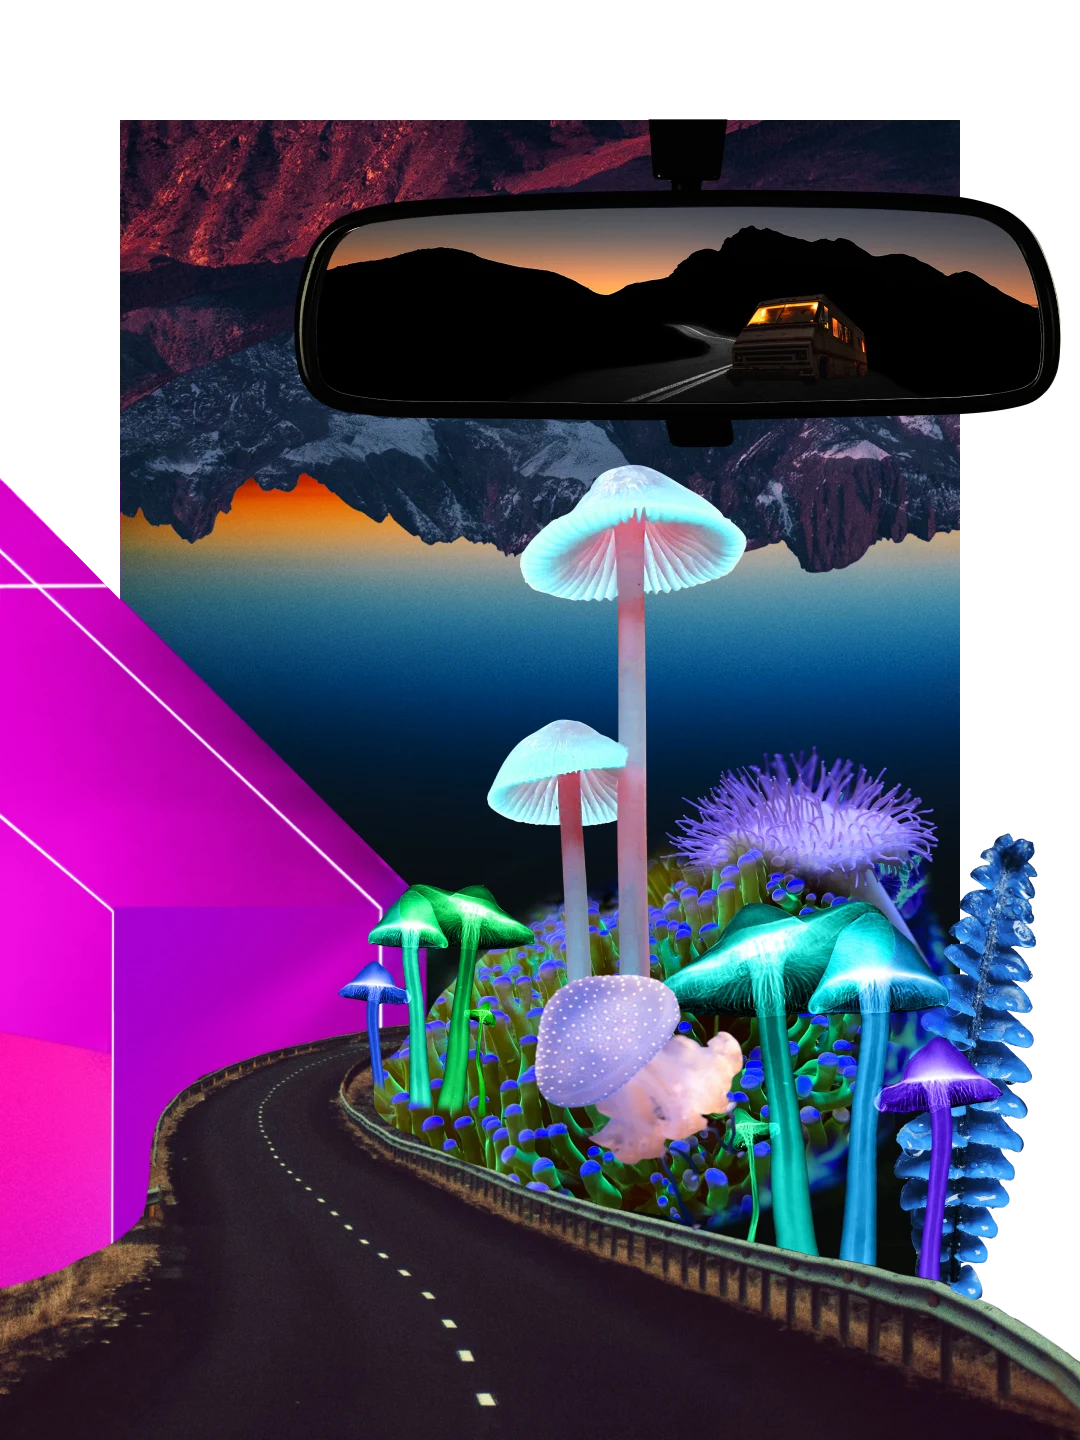 Colagem vibrante com tema noturno. Forma geométrica rosa neon à esquerda, com formações montanhosas escuras e desenho de grandes cogumelos em primeiro plano. No alto, vista do espelho retrovisor mostrando minivan, estrada e montanhas ao pôr do sol.
